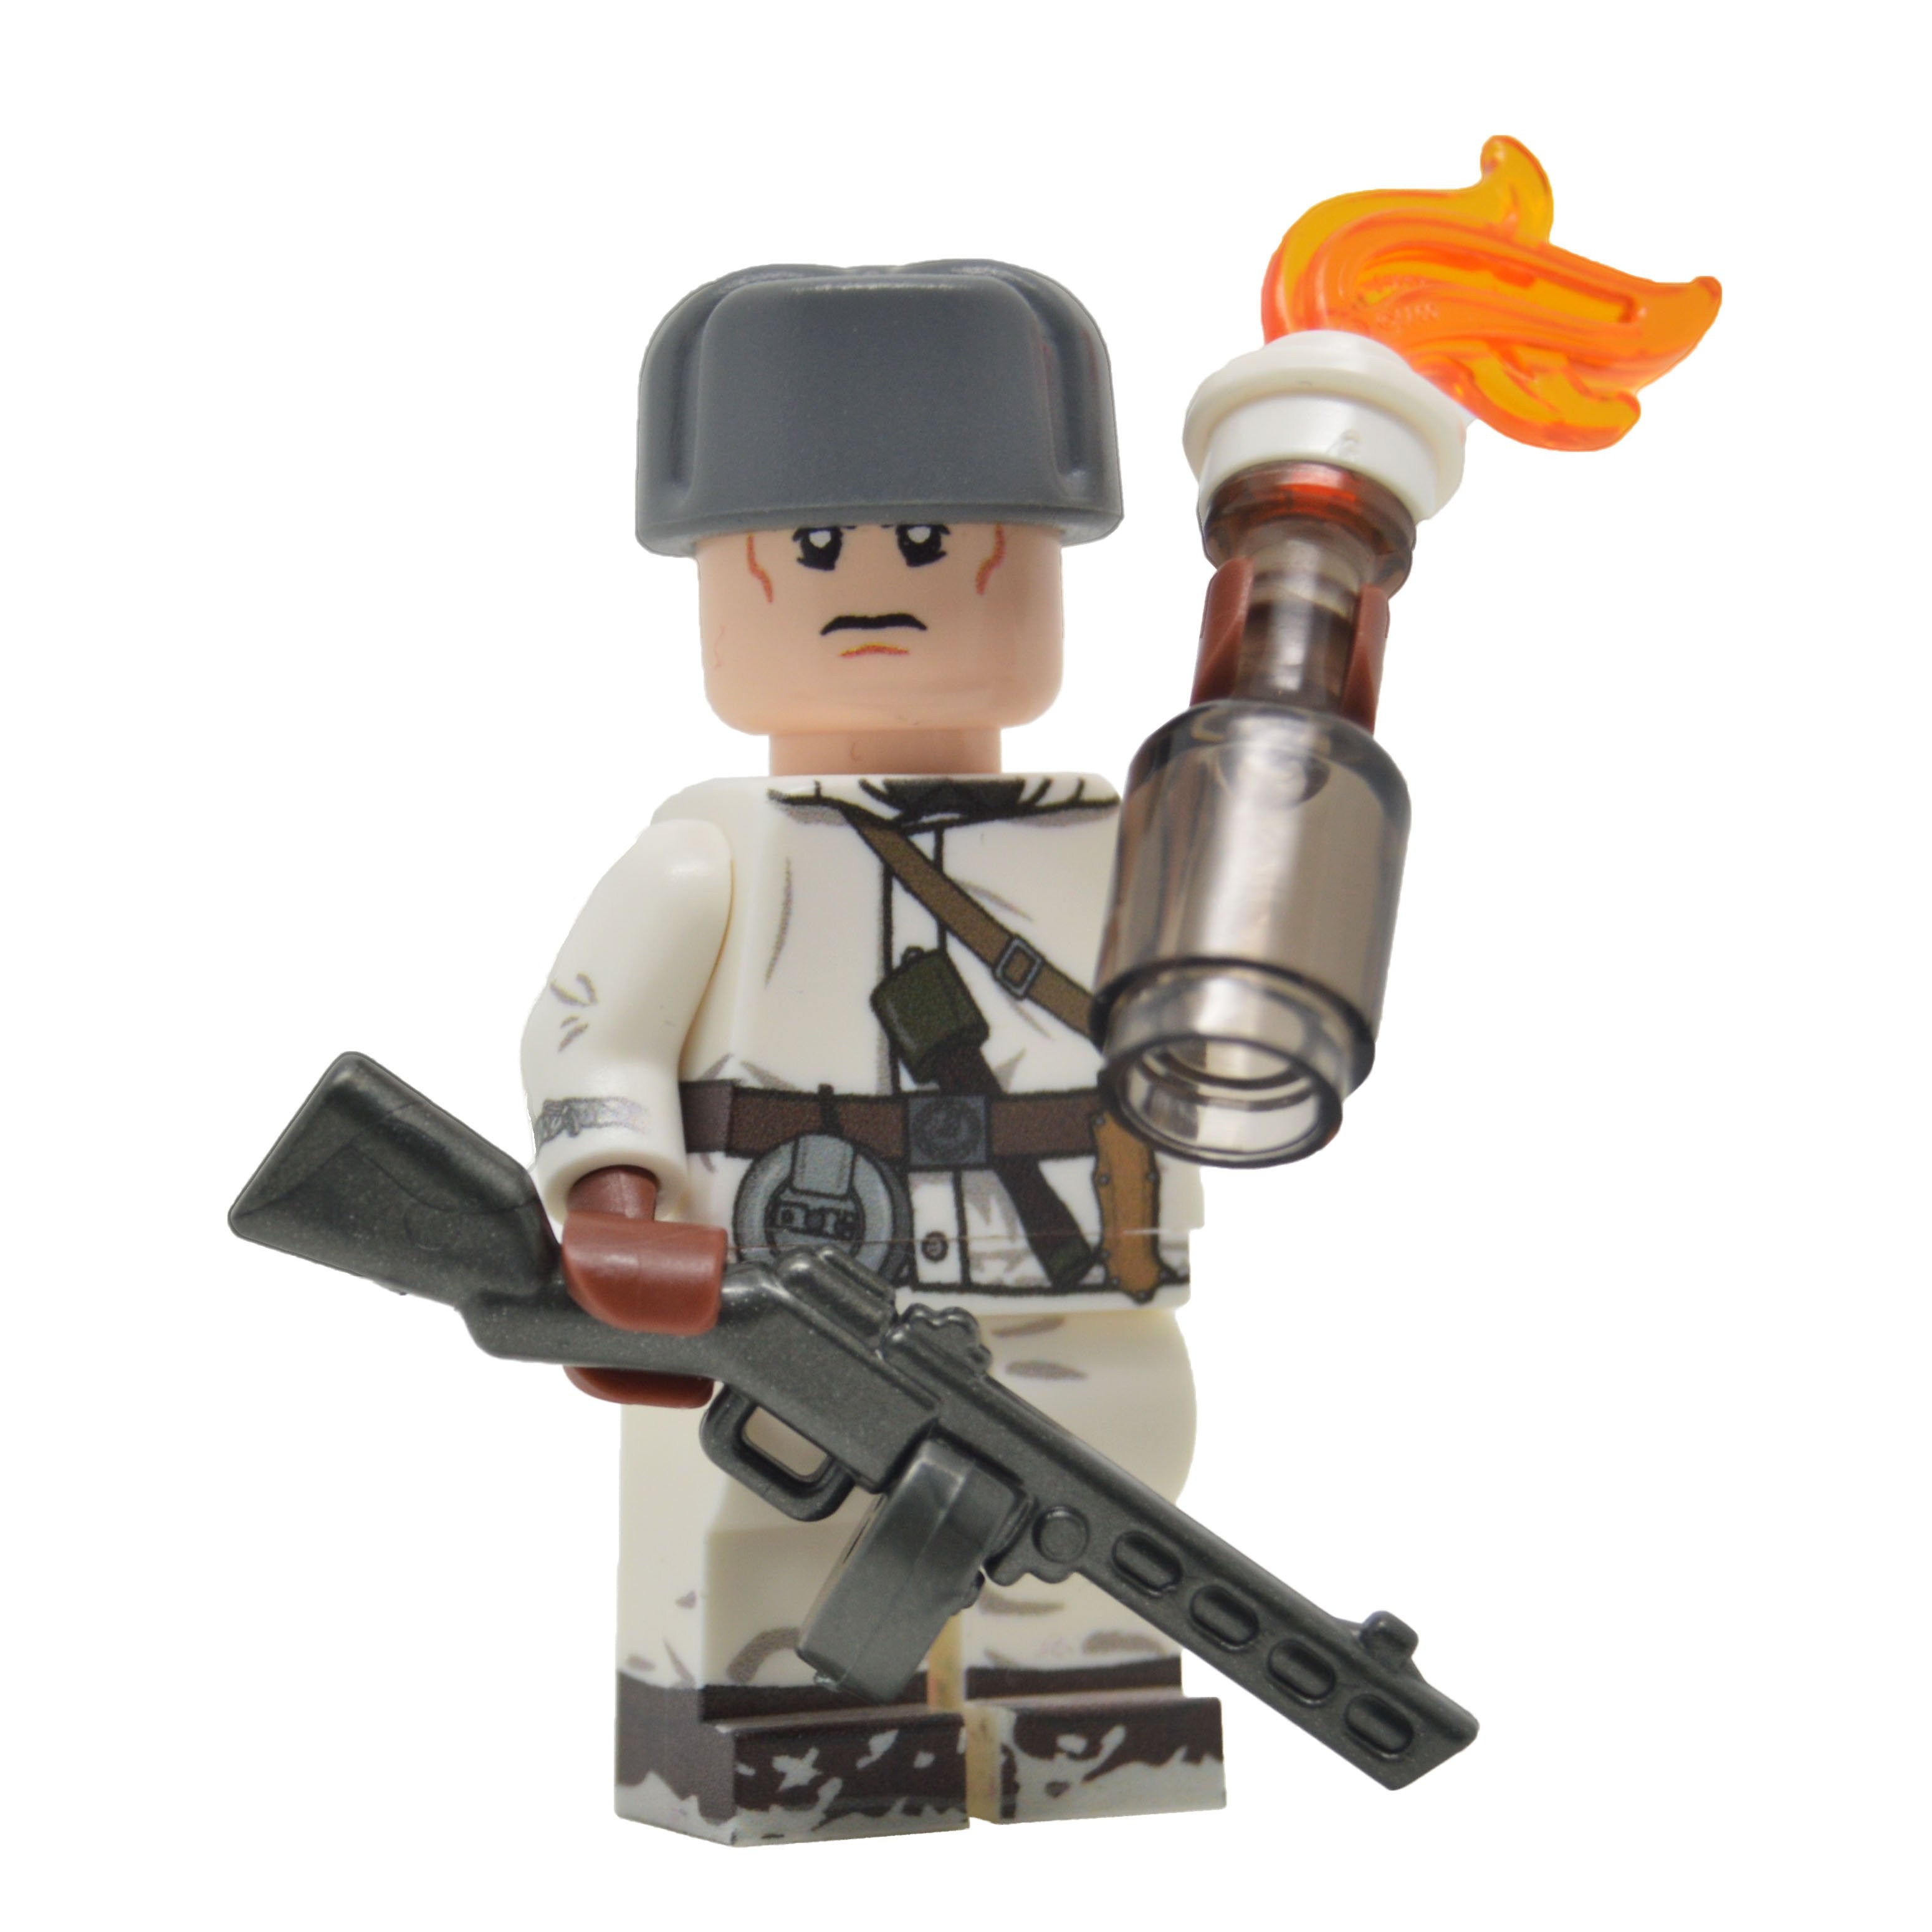 LEGO ww2 Finnish Soldier